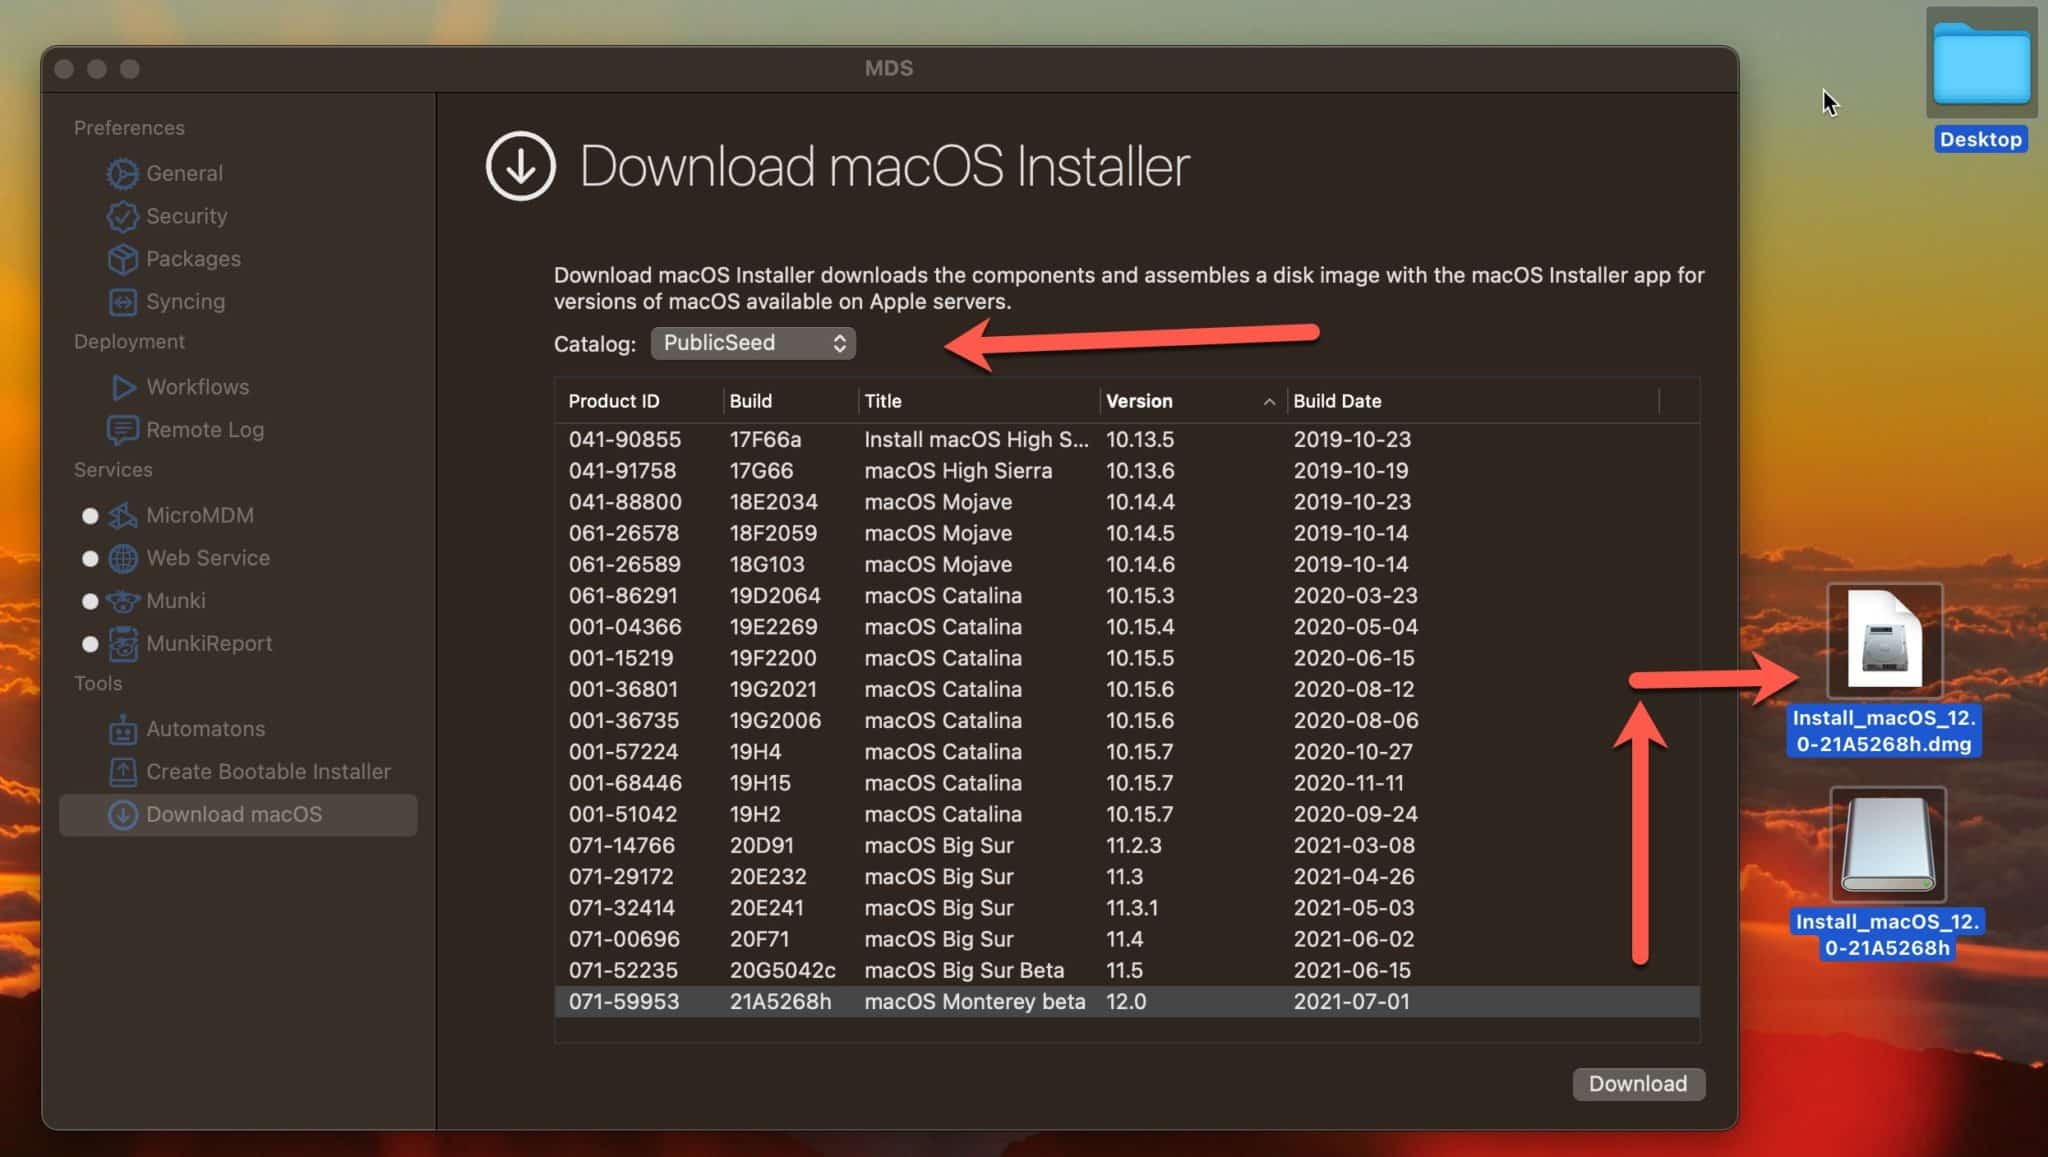 Macos 10.13 high sierra download